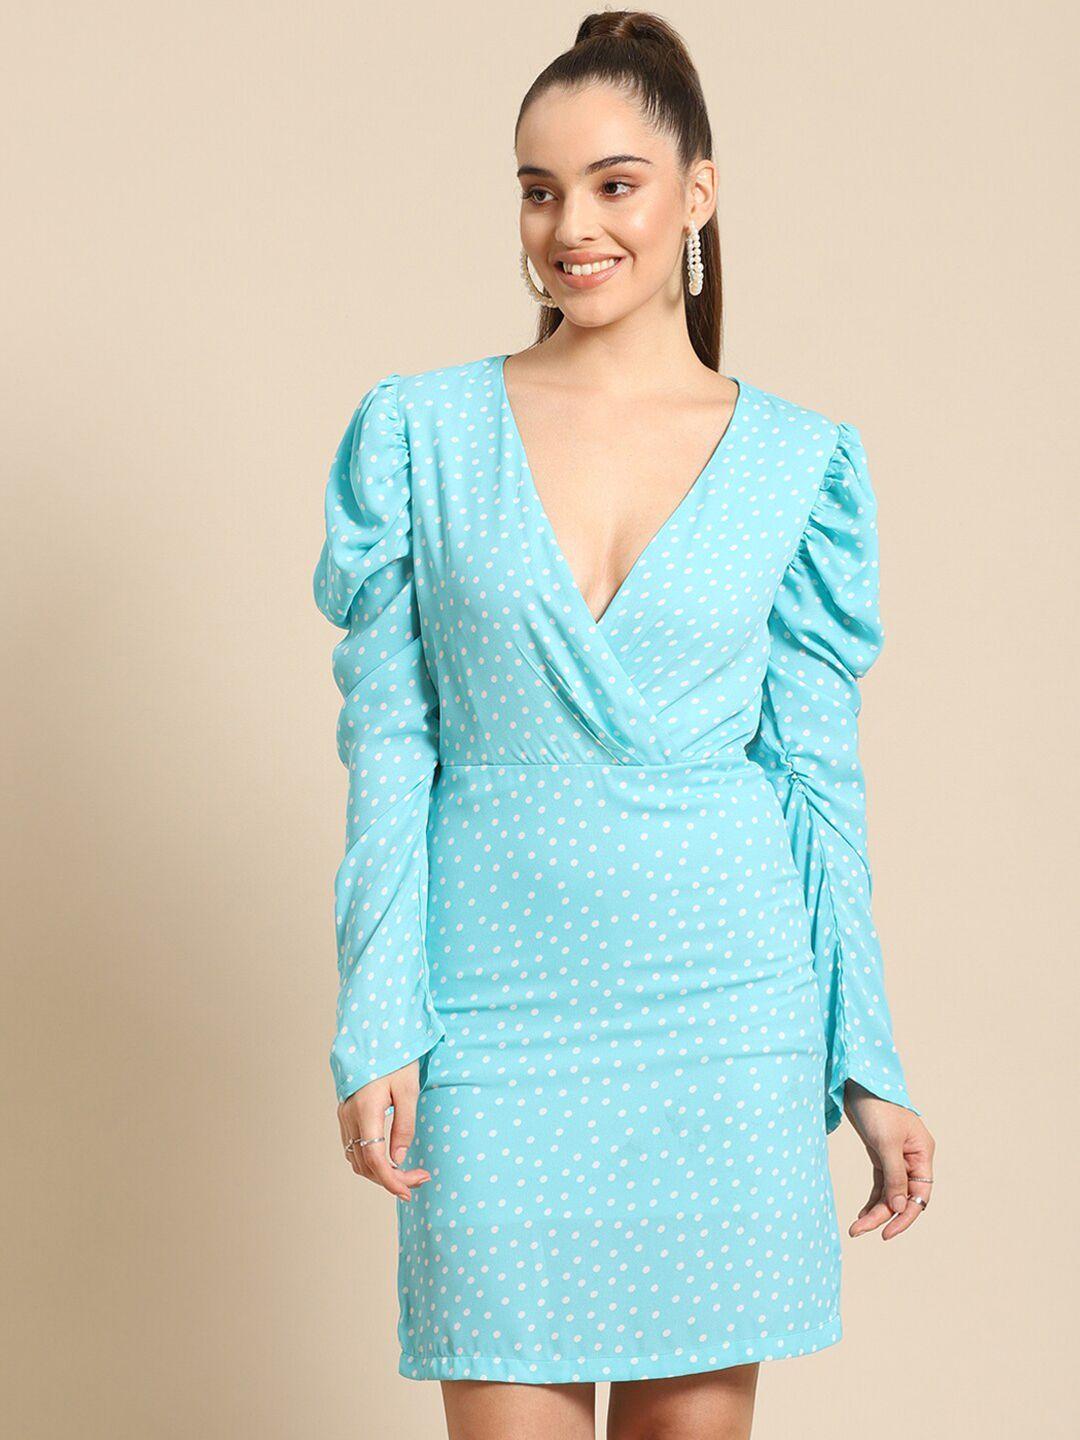 dodo-&-moa-women-turquoise-blue-&-white-polka-dots-printed-wrap-dress